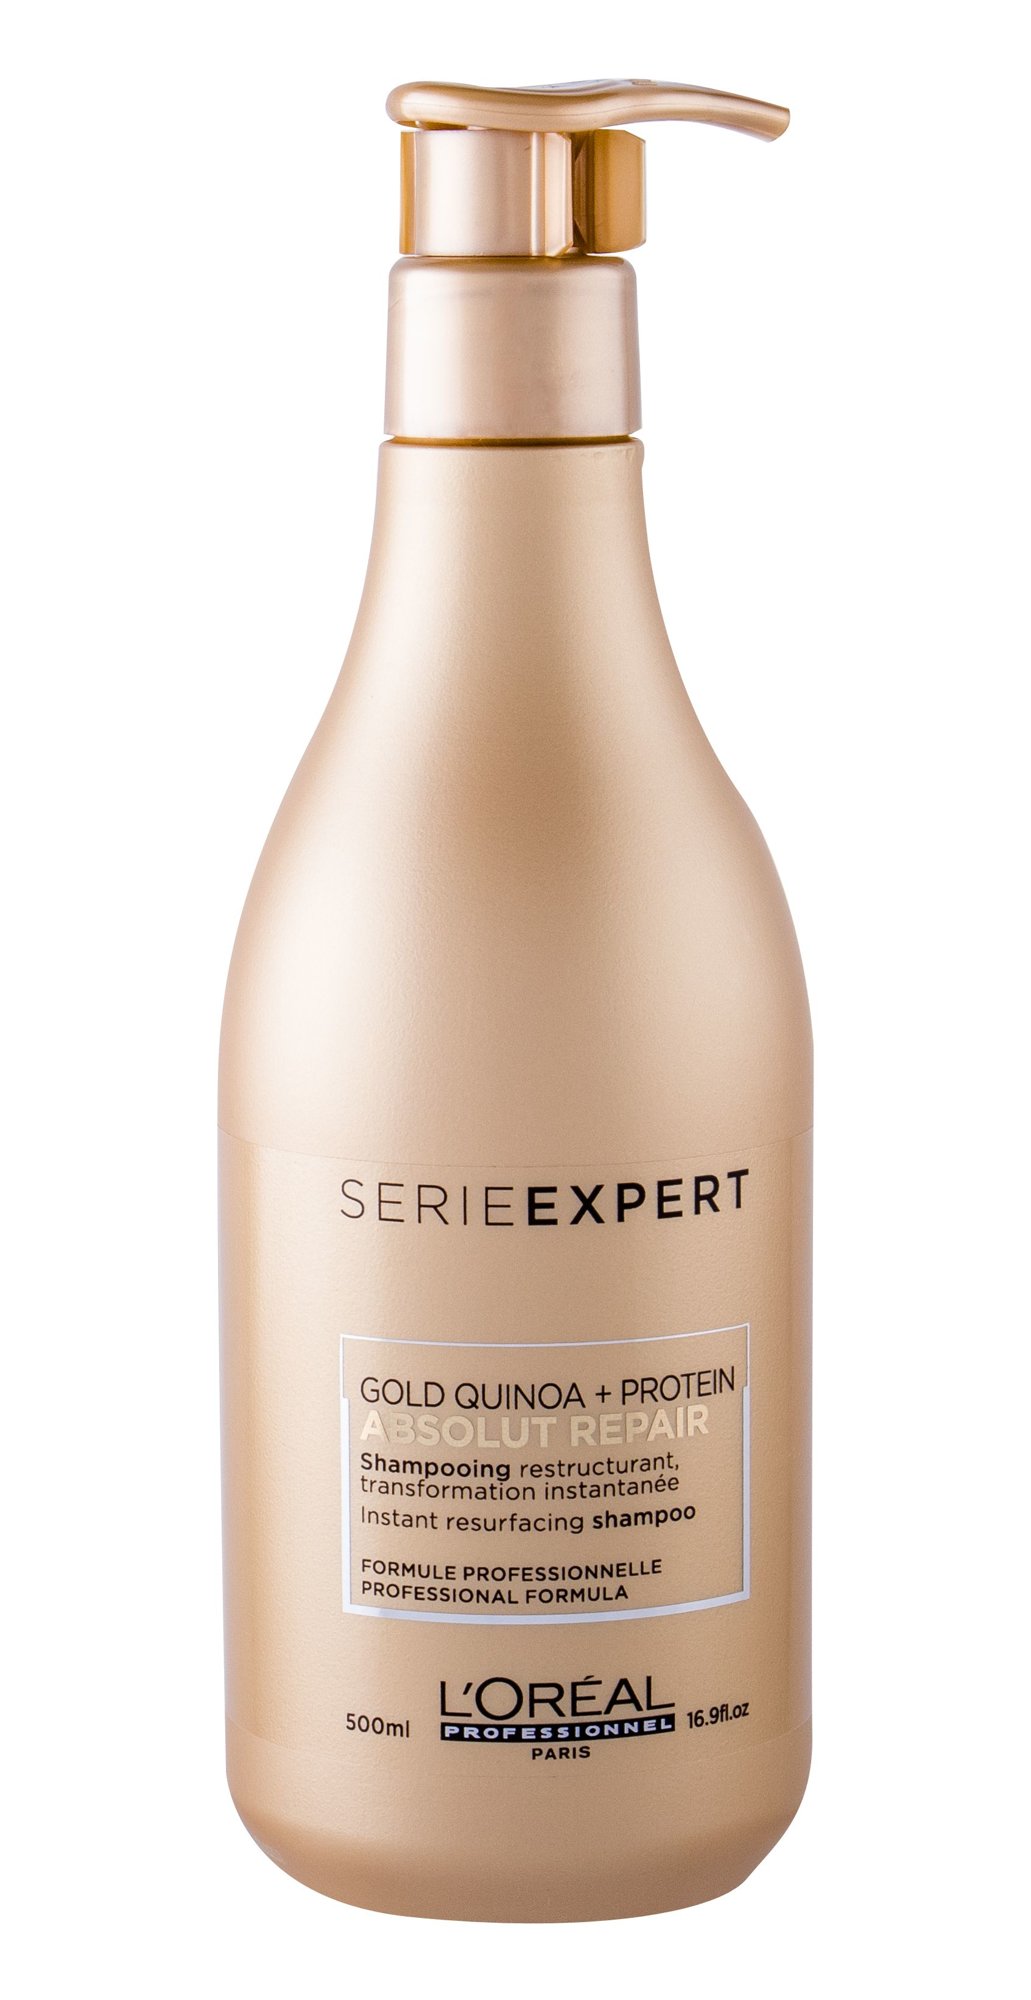 L´Oréal Professionnel Série Expert Absolut Repair Gold Quinoa + Protein šampūnas